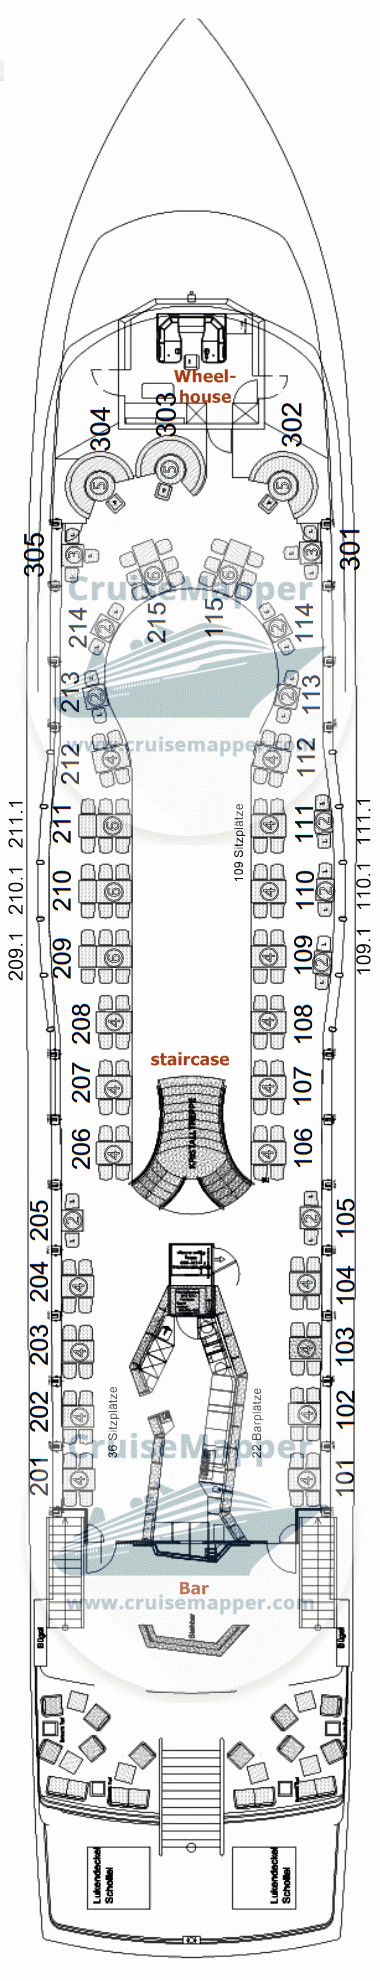 MS Kristallkonigin Deck 02 - Upper-Oberdeck